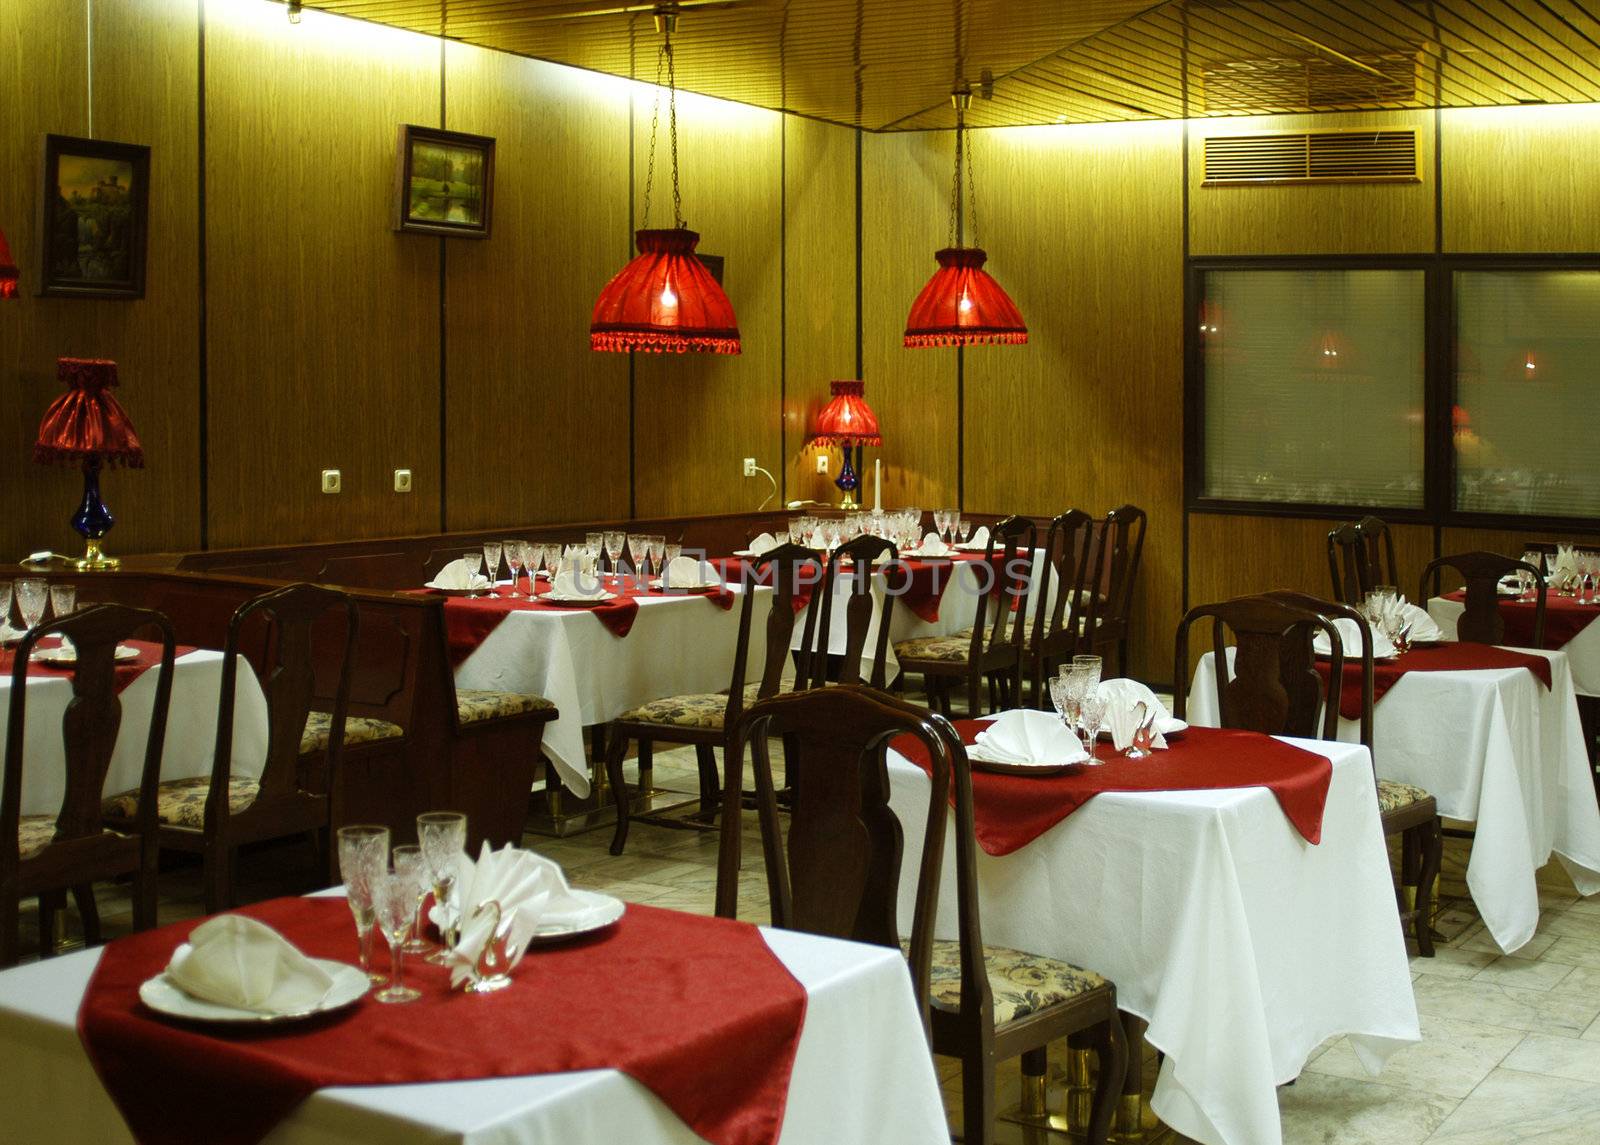 interior of the restaurant by oleg_zhukov